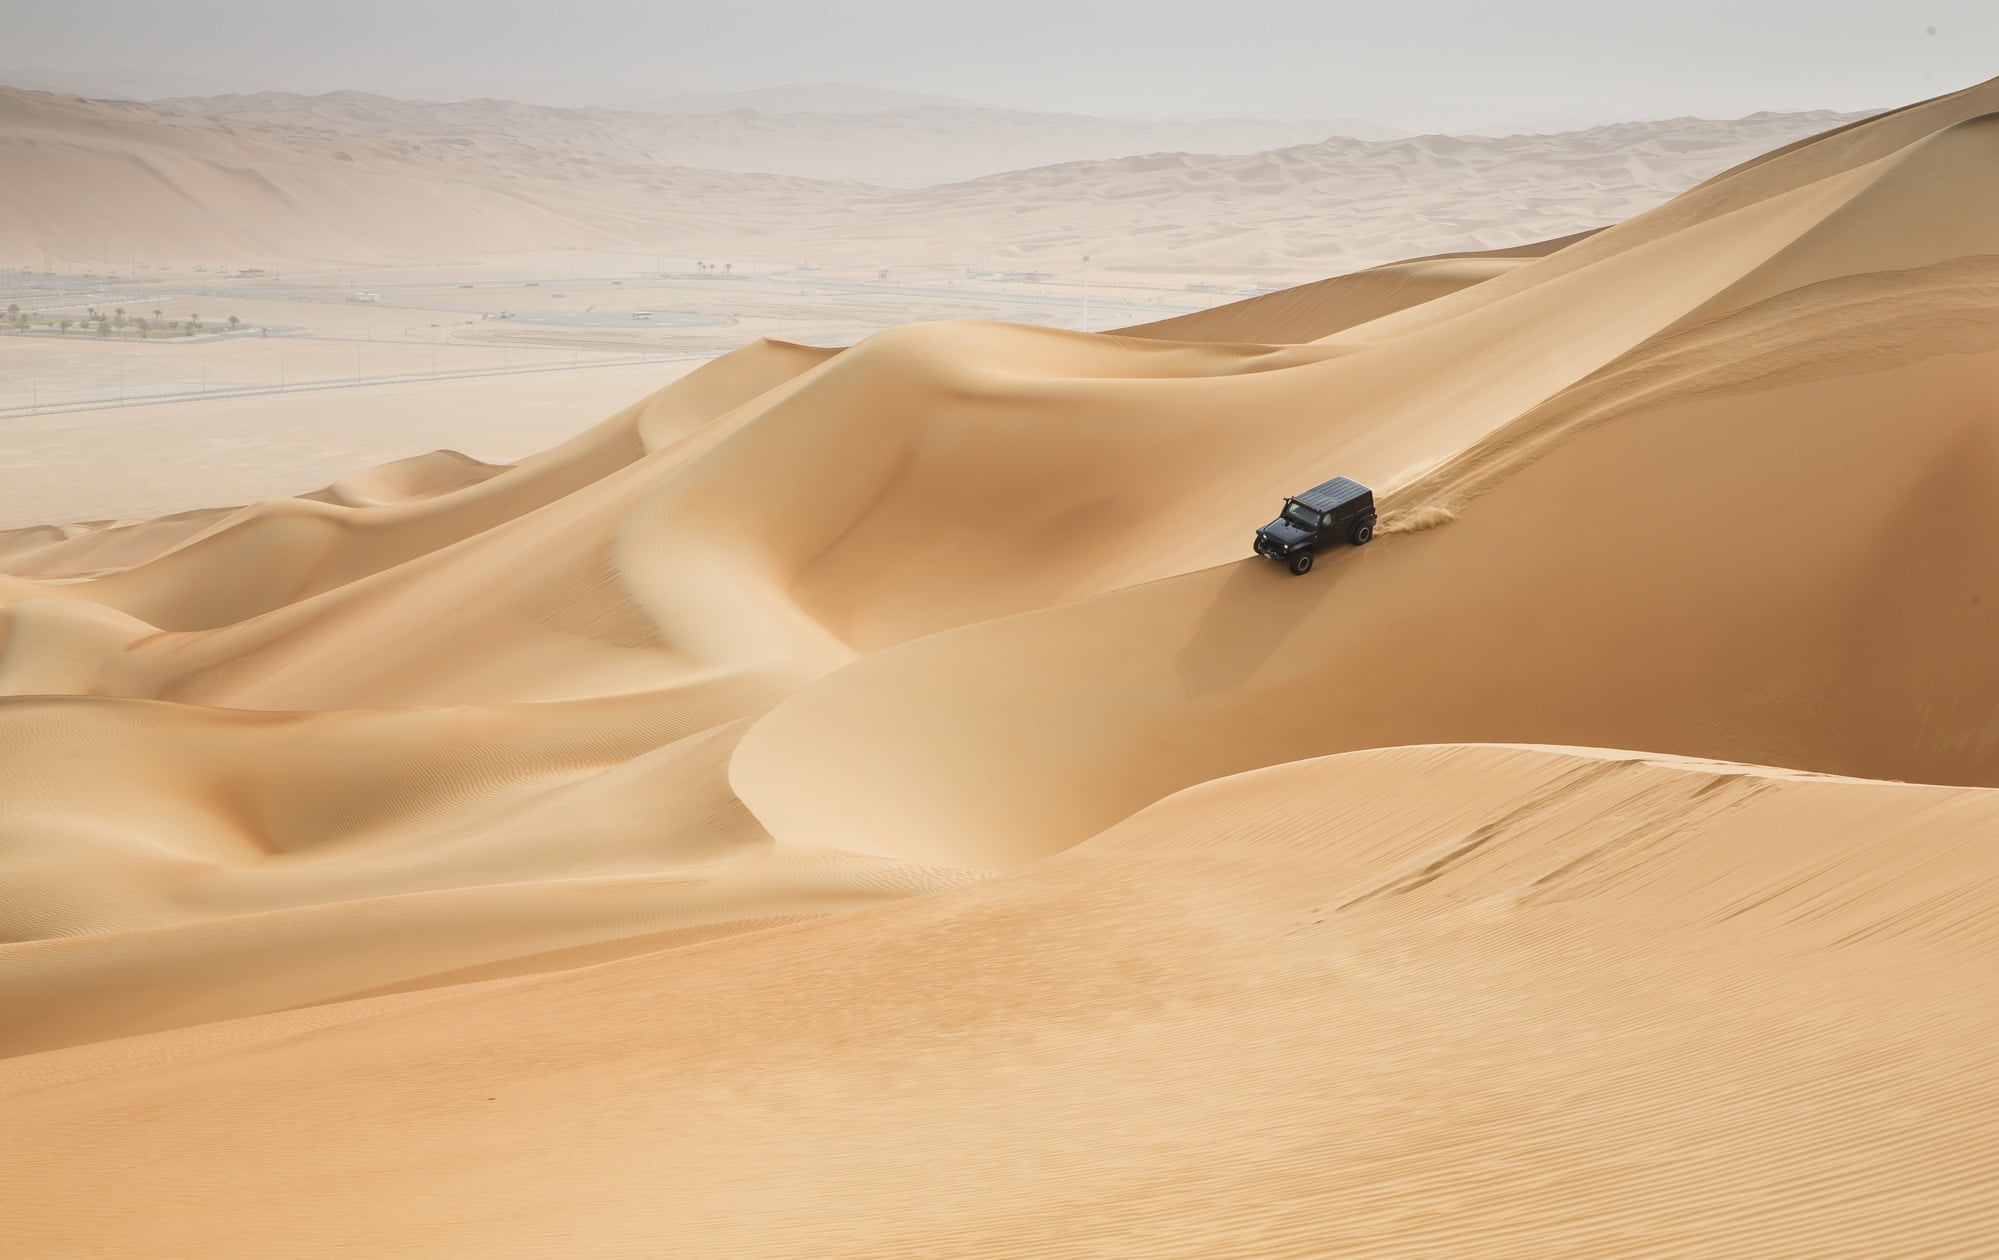 De smukkeste ørkener i verden. Egypten. Pyramider og Ankh. Al Safen, Oman, Omani men at a camel race in a countryside. 4W car driving in Rub al Khali Desert at the Empty Quarter, in Abu Dhabi, United Arab Emirates